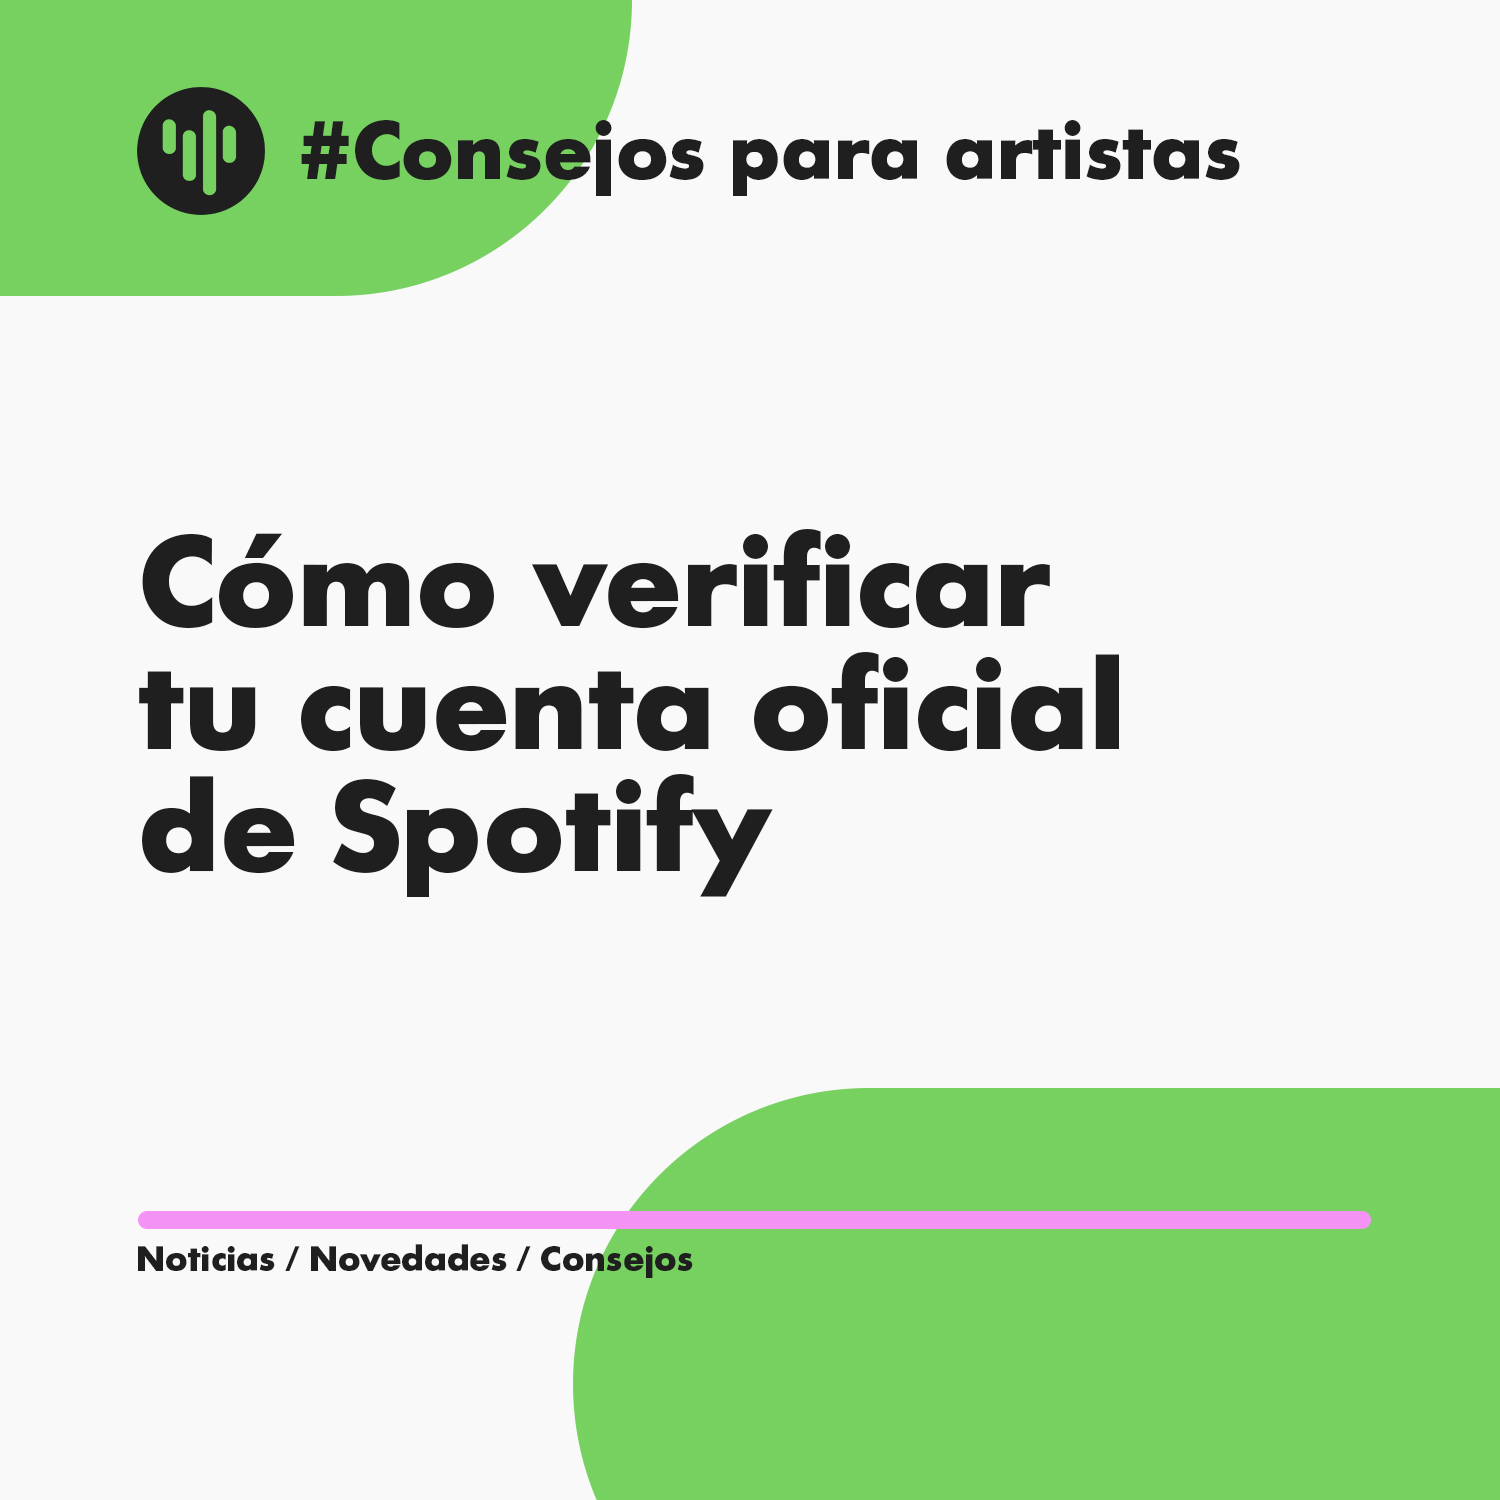 Portada cómo verificar una cuenta de Spotify for Artists